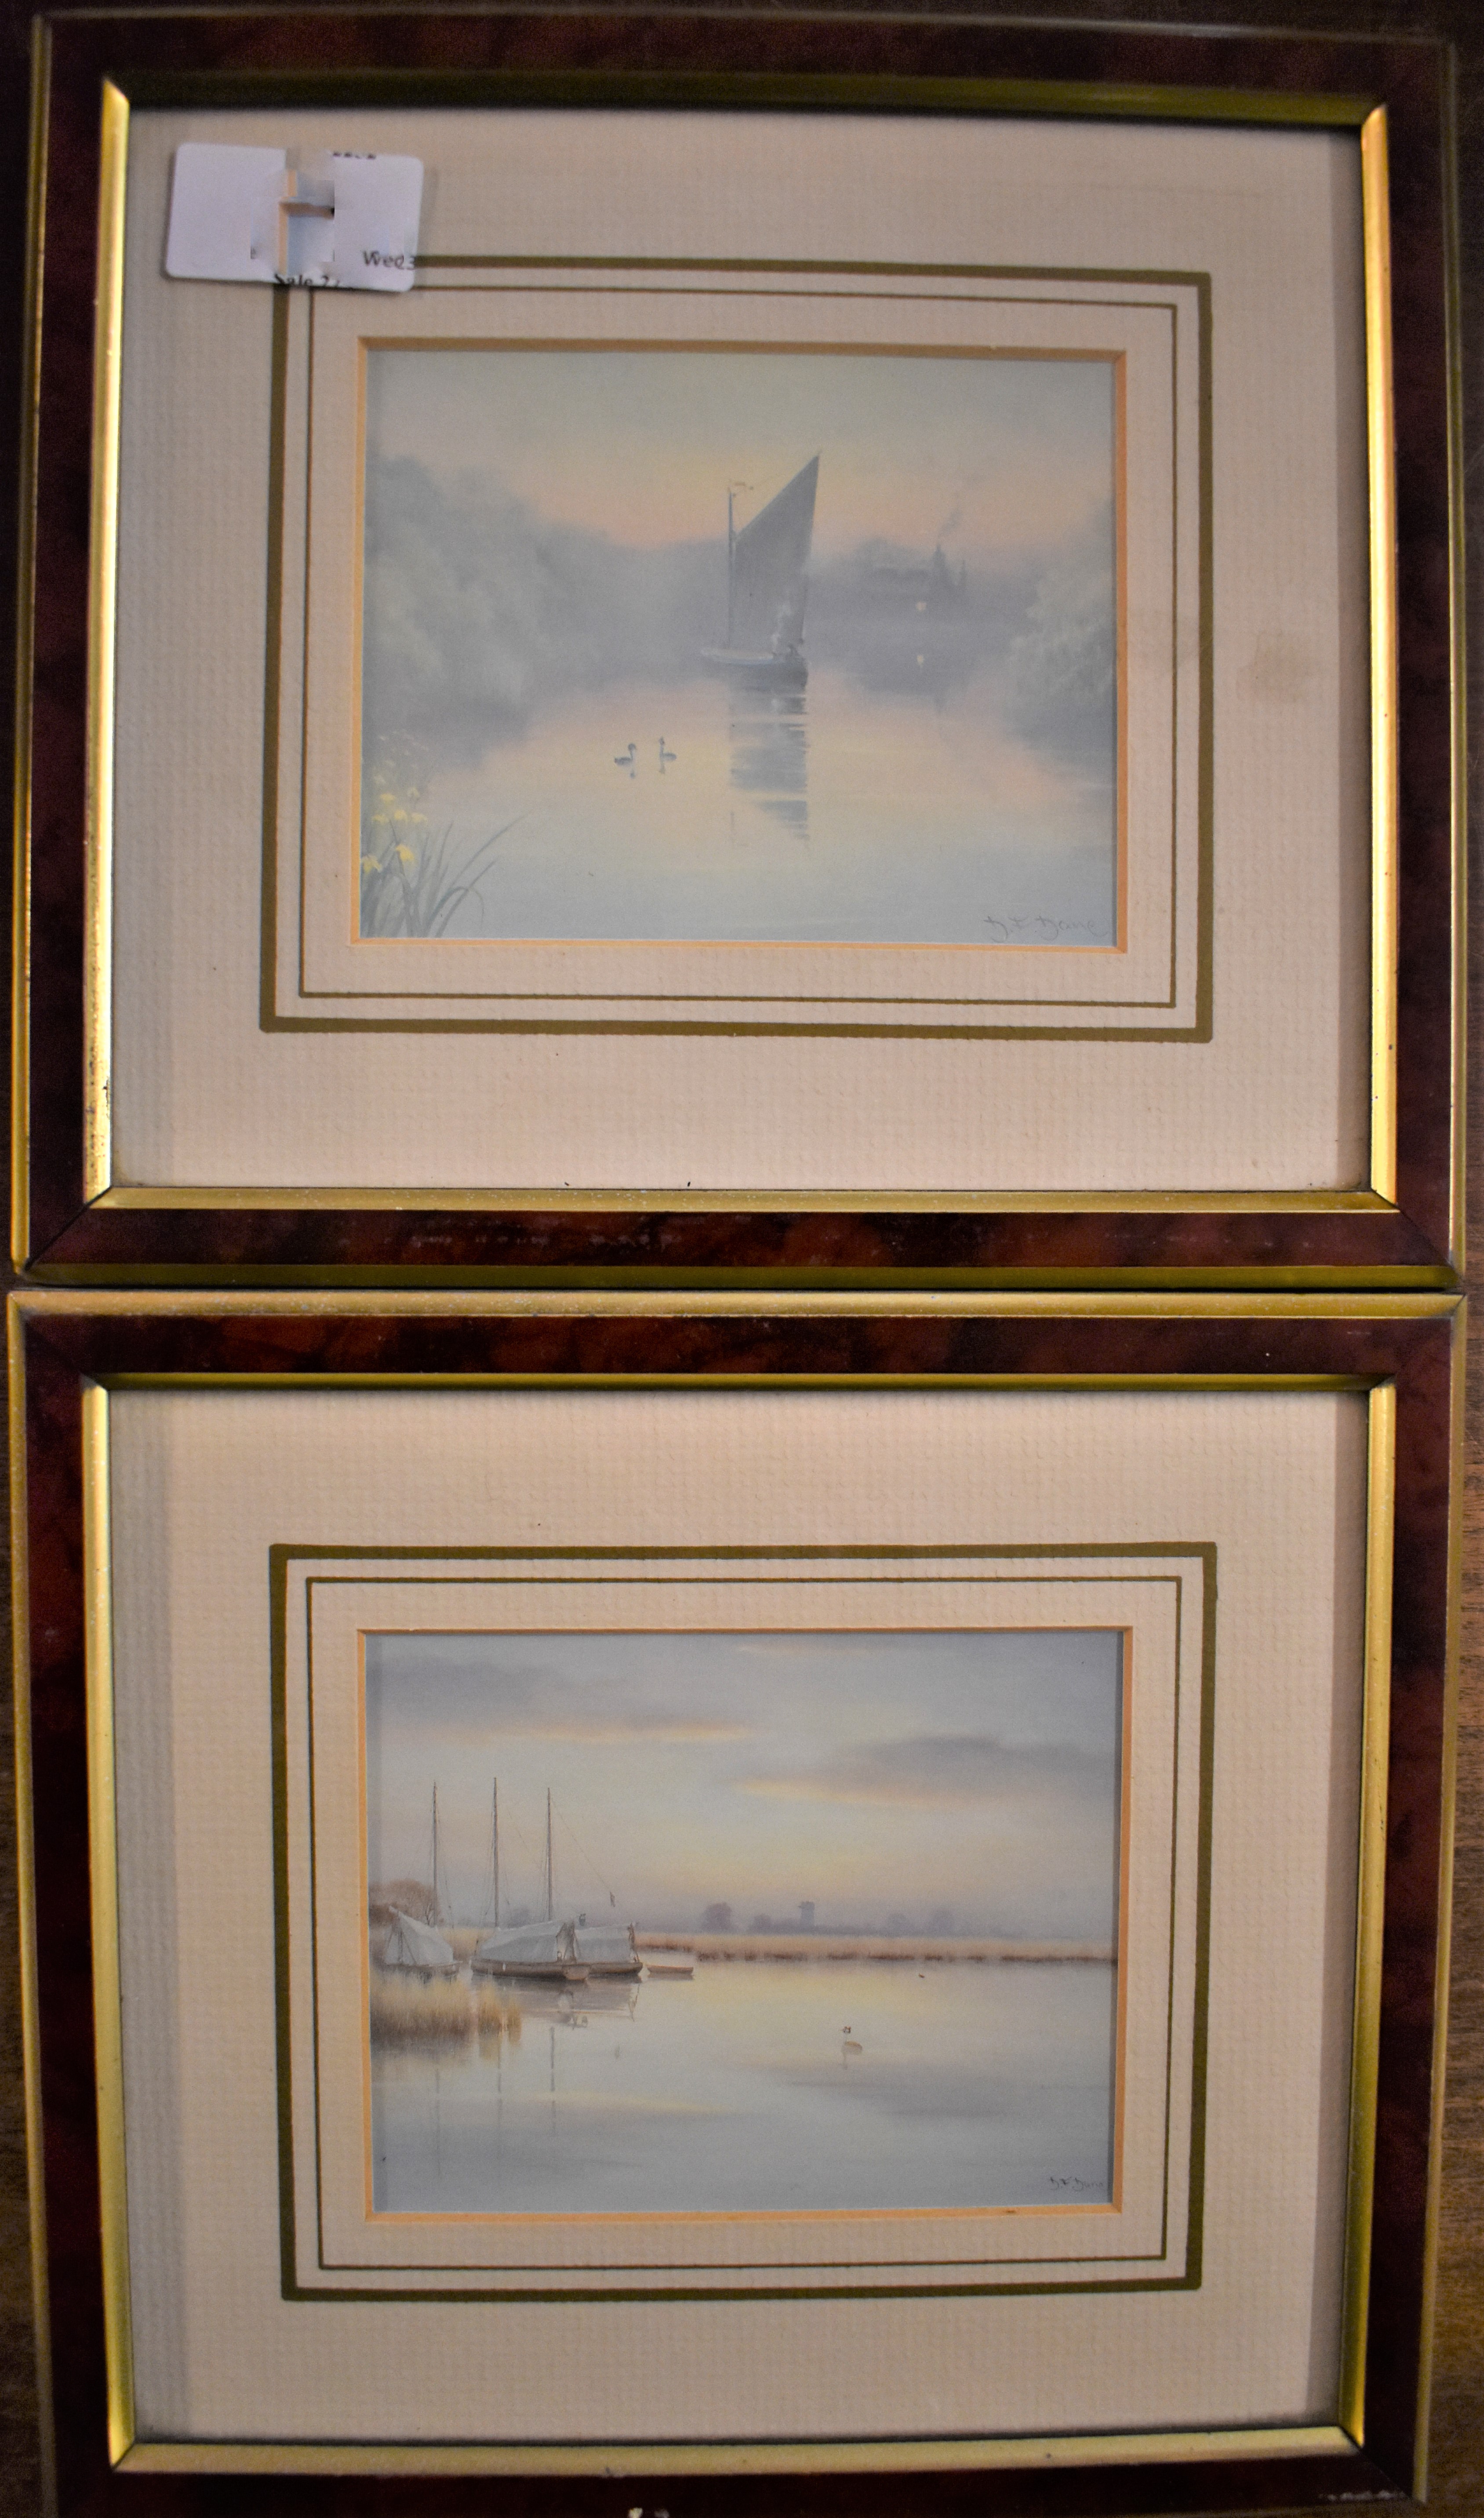 Pictures (2)-'Mini Rivers 221164-221156-by David Dane-Framed prints (Colour) measurements 22cm x